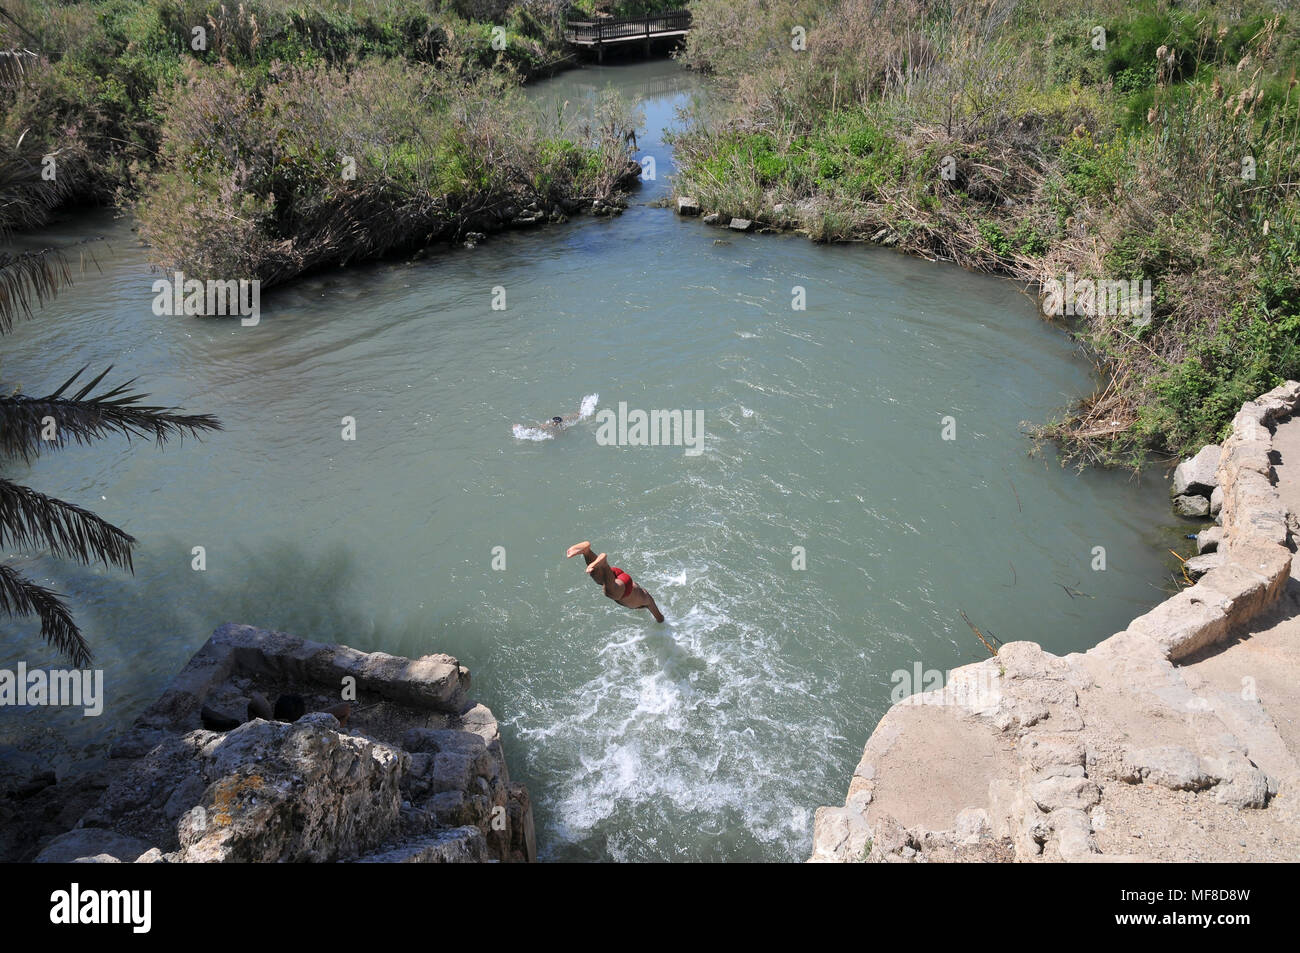 Israel, Maagan Michael, Nahal Taninim - Crocodile River national park, boy dives into the water Stock Photo